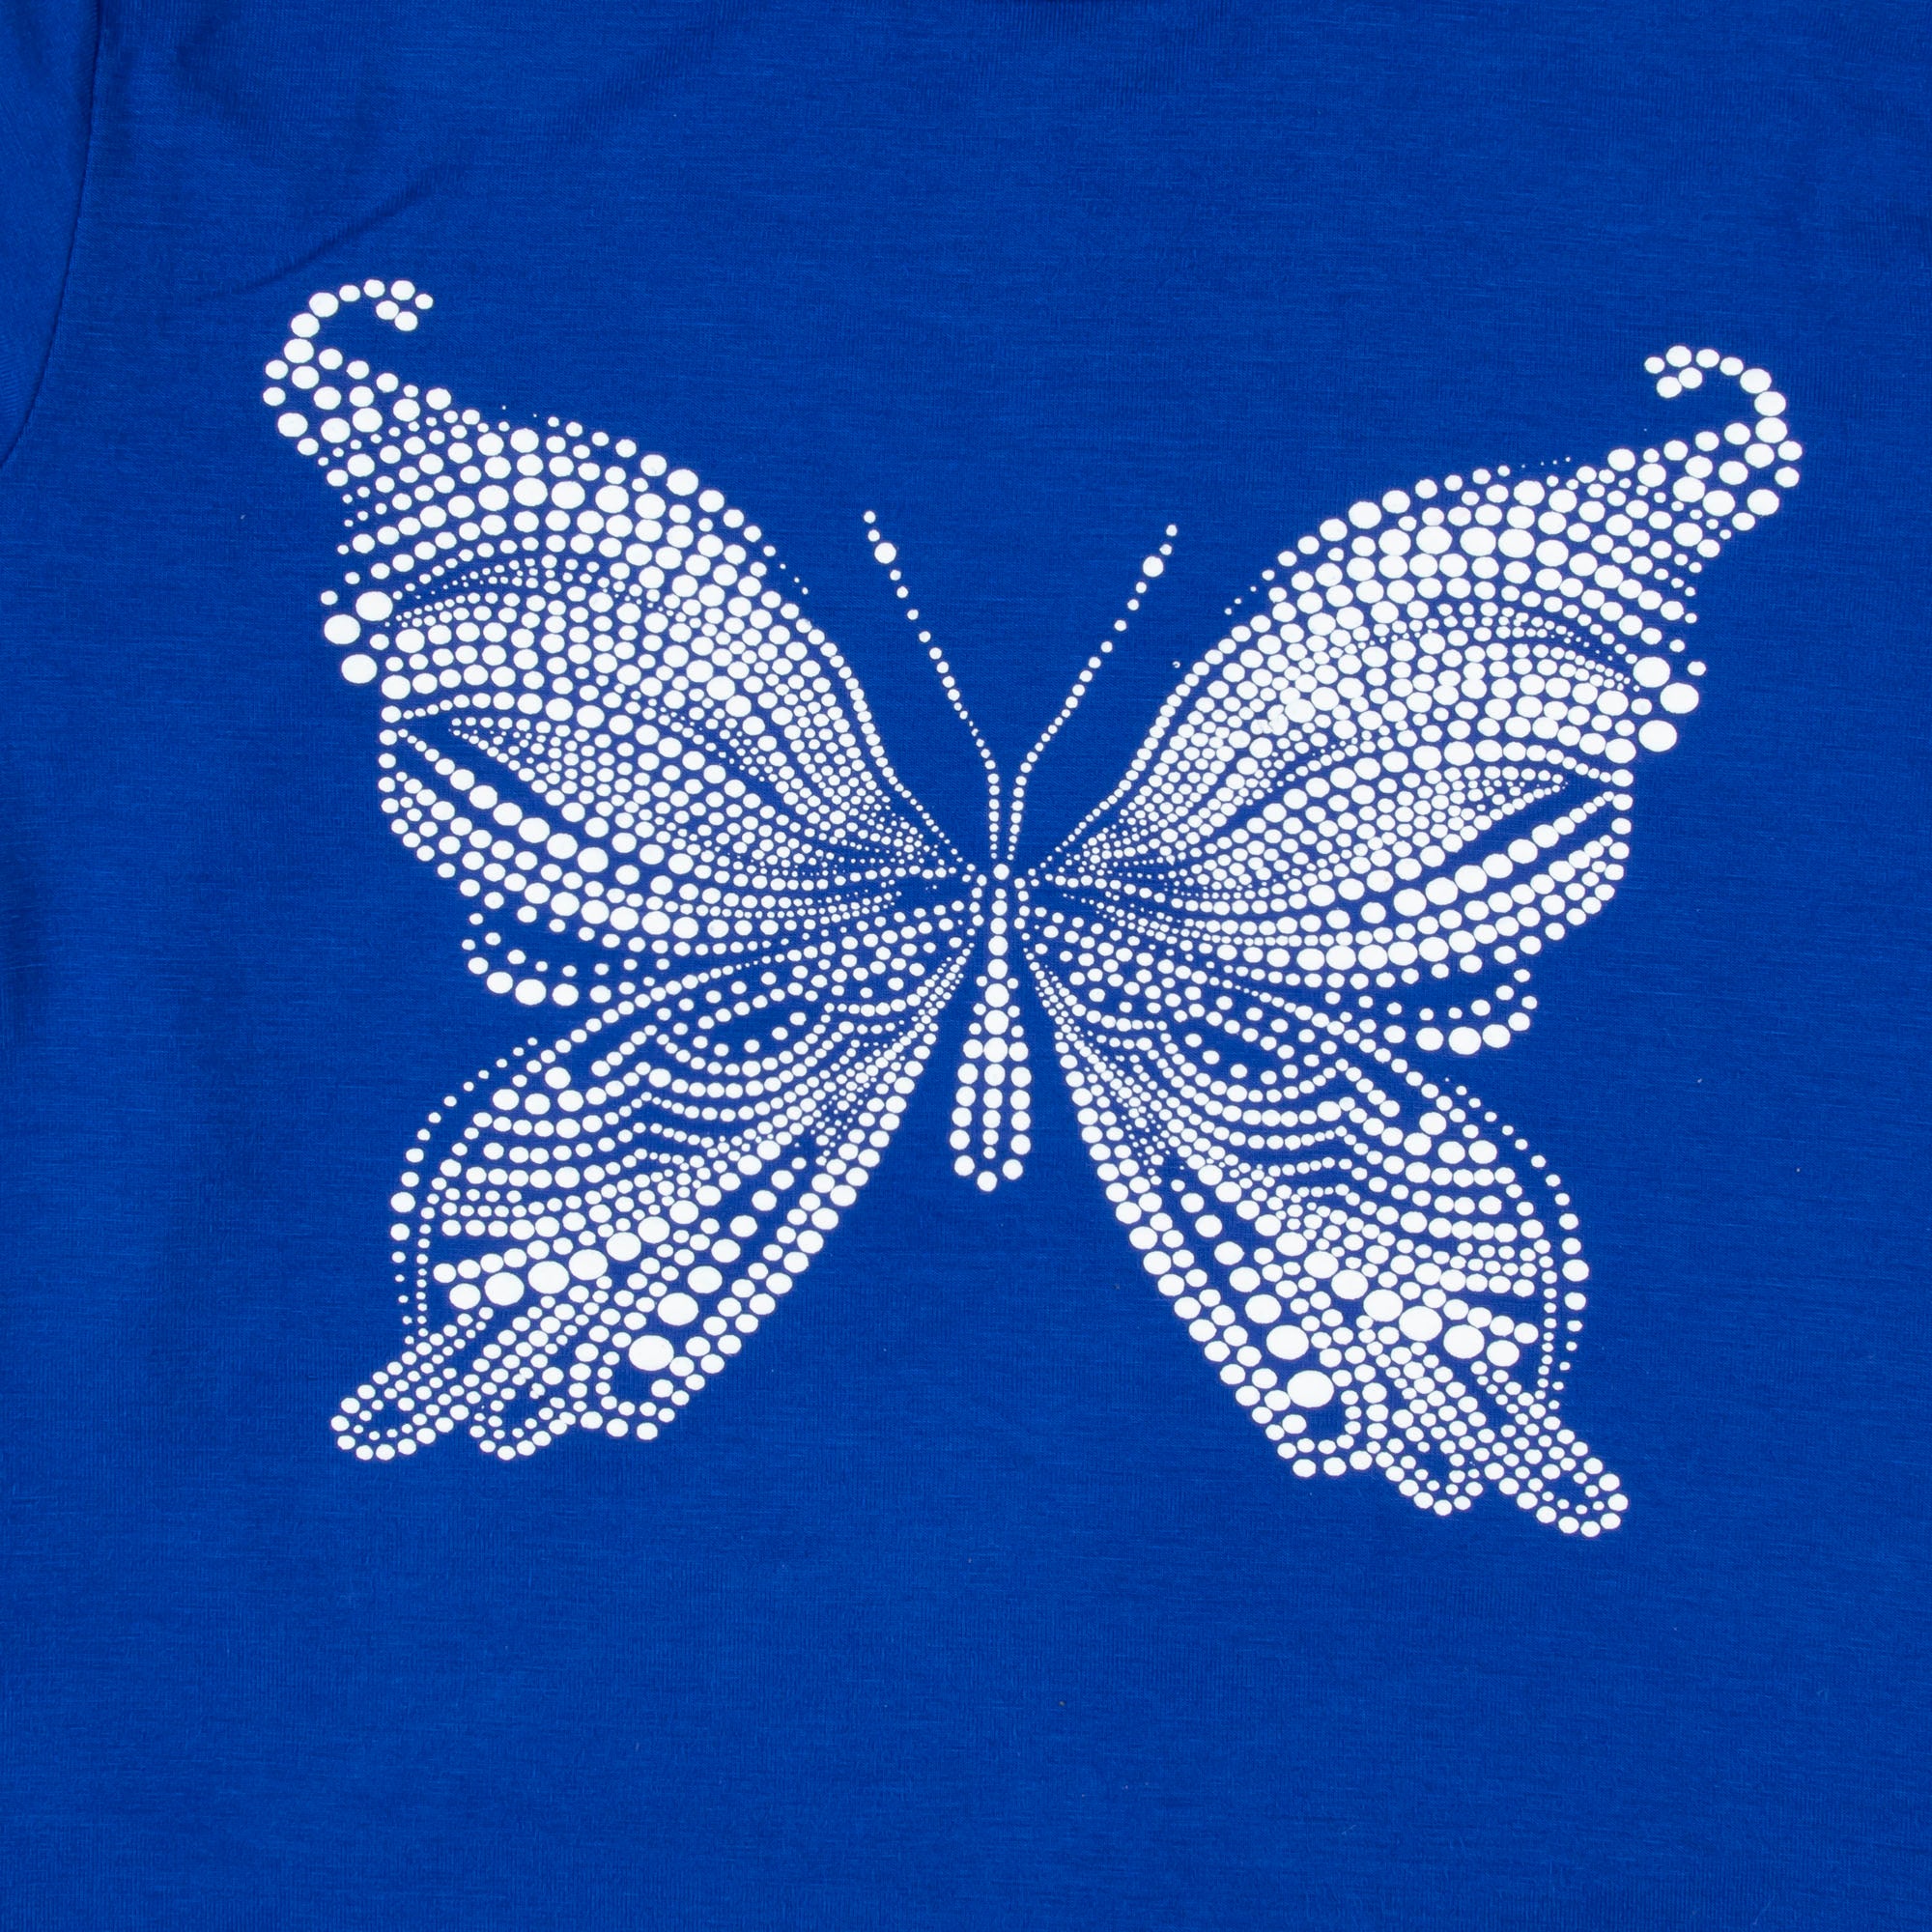 Lucky Butterfly T-shirt